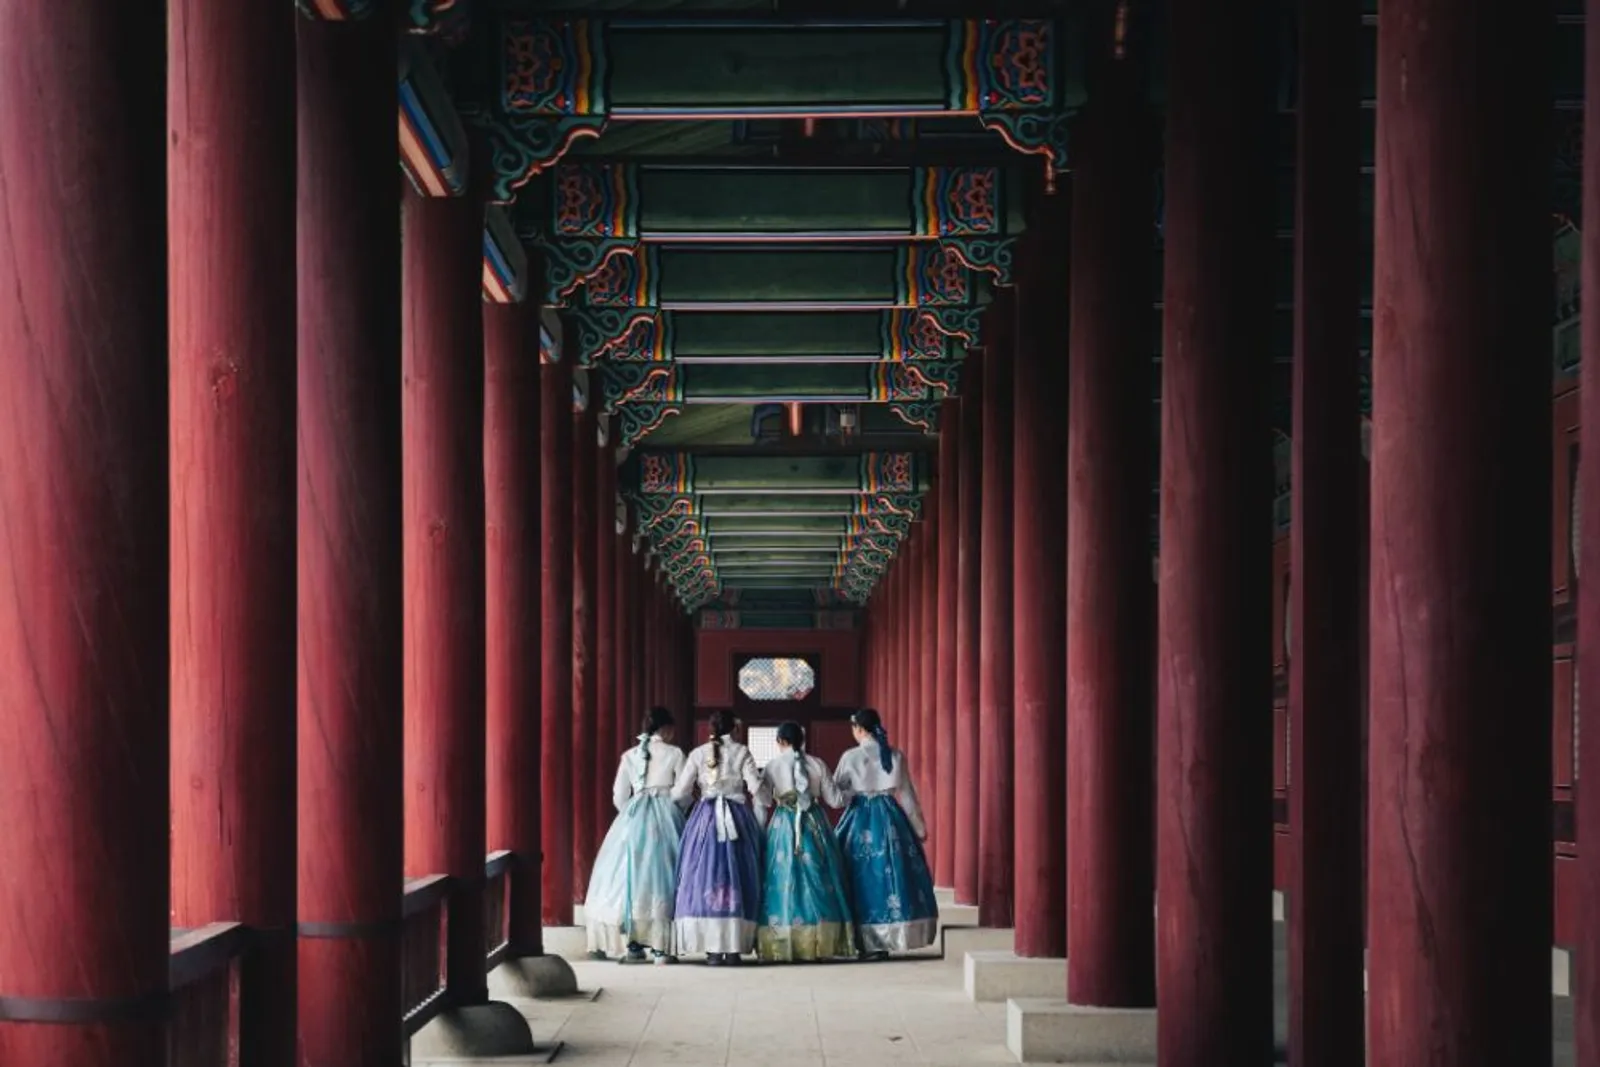 Harga Tiket Istana Gyeongbokgung, Tempatnya Foto dengan Hanbok Cantik